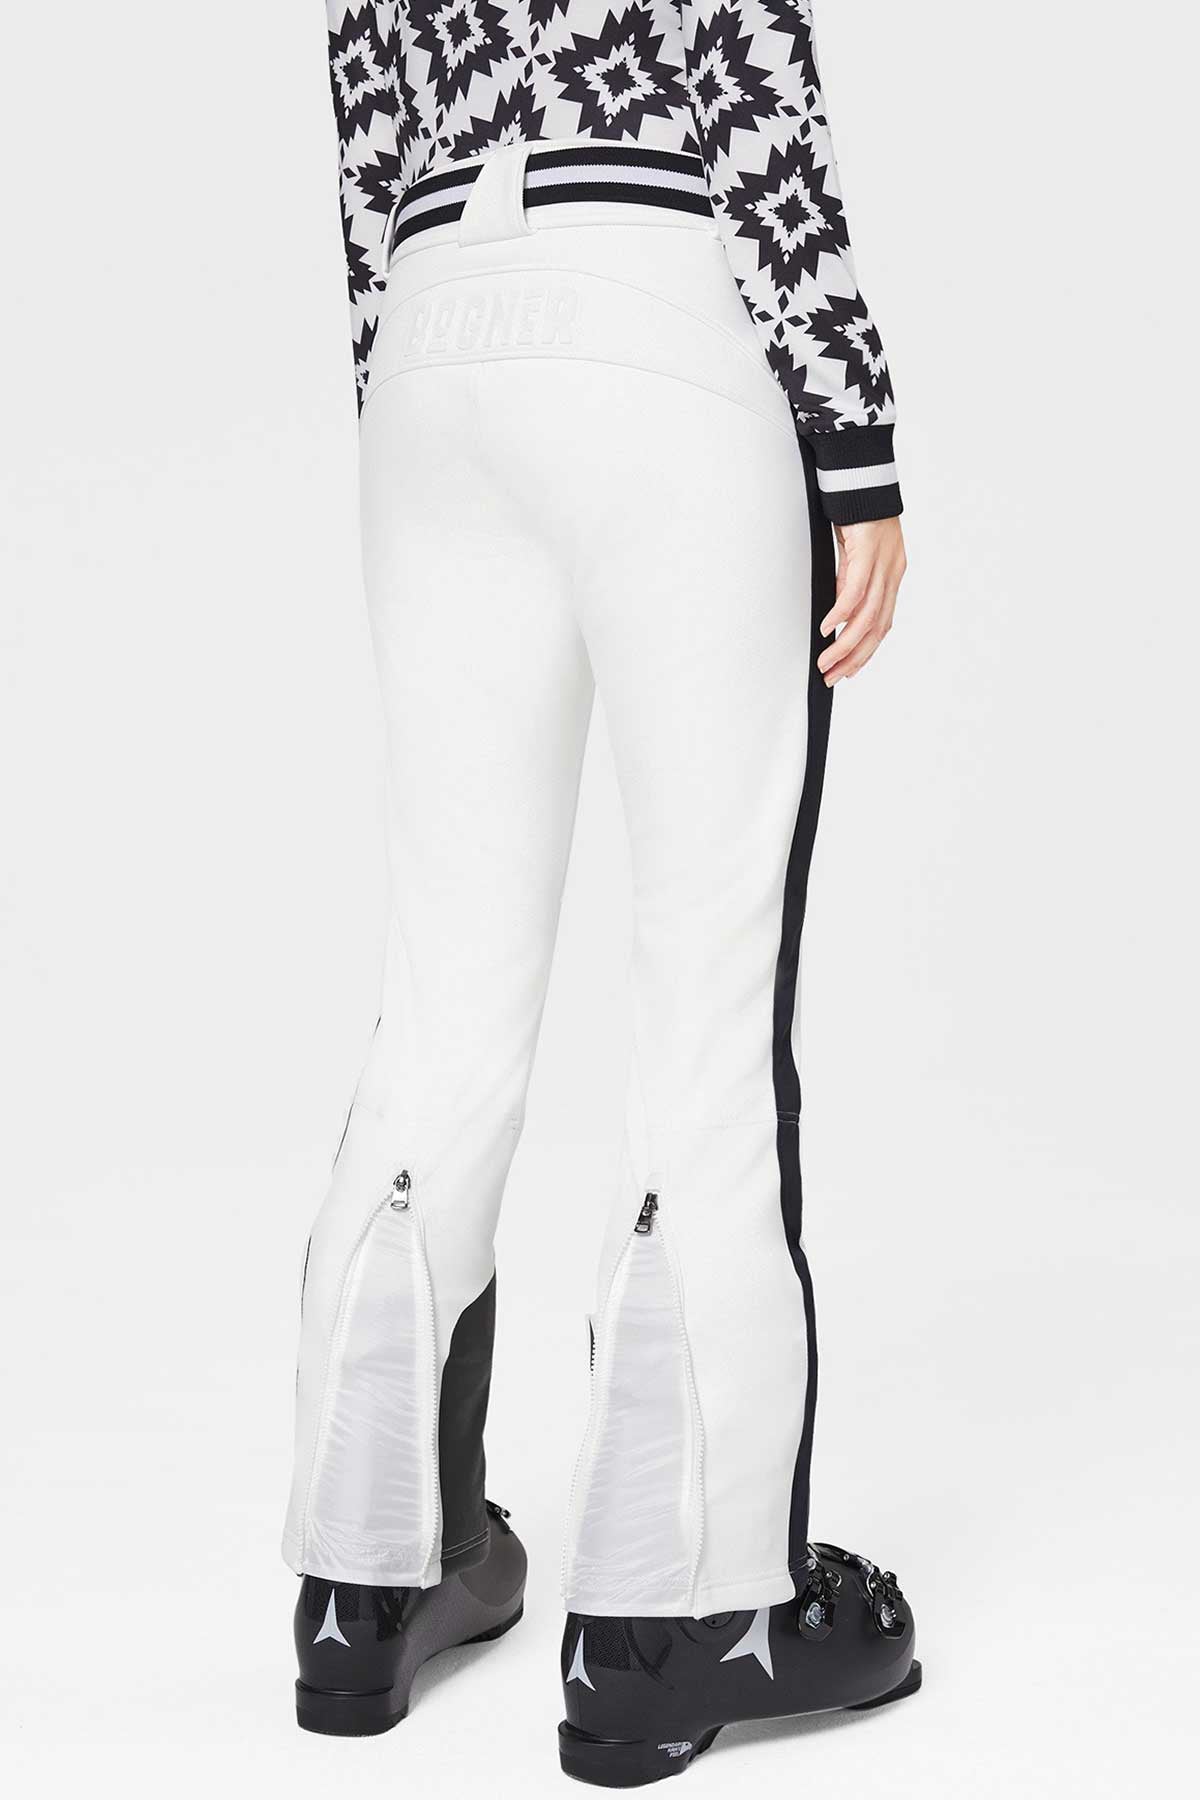 Bogner Pantolon-Libas Trendy Fashion Store